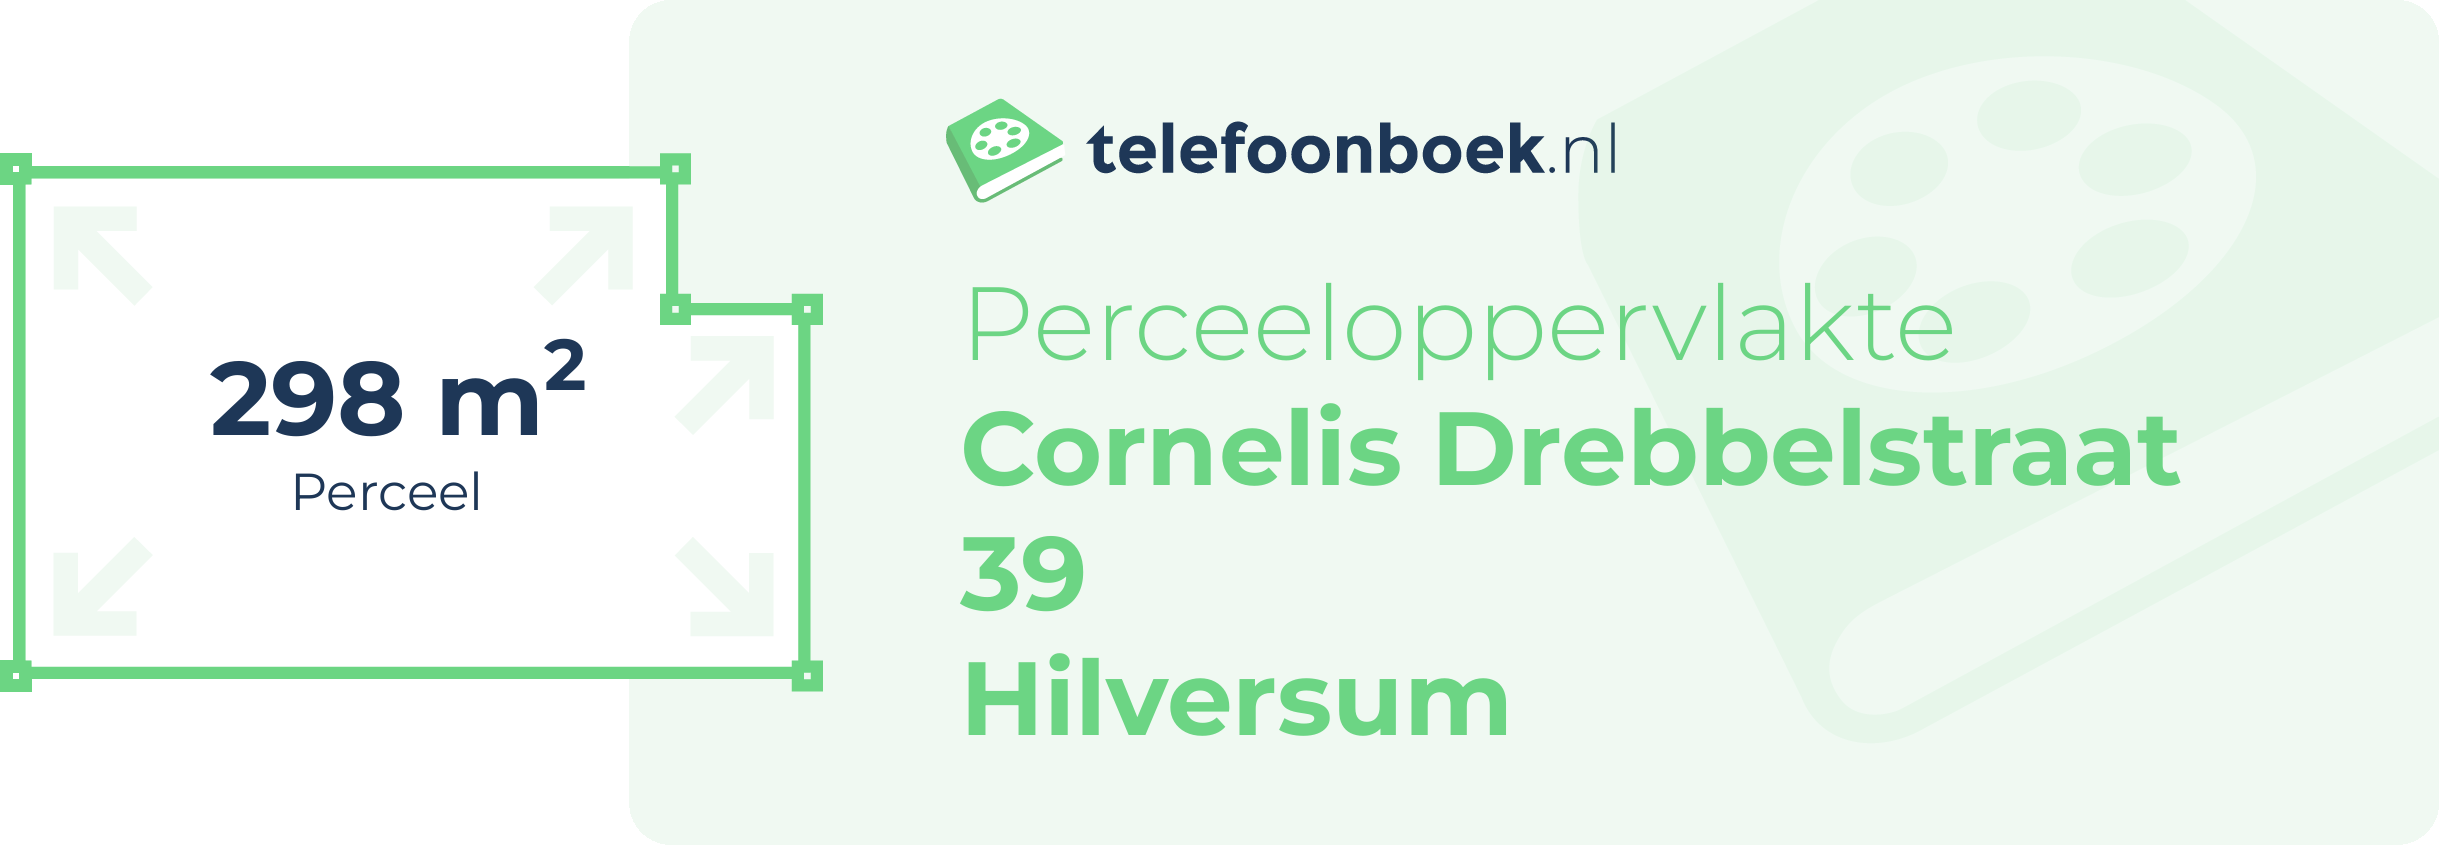 Perceeloppervlakte Cornelis Drebbelstraat 39 Hilversum